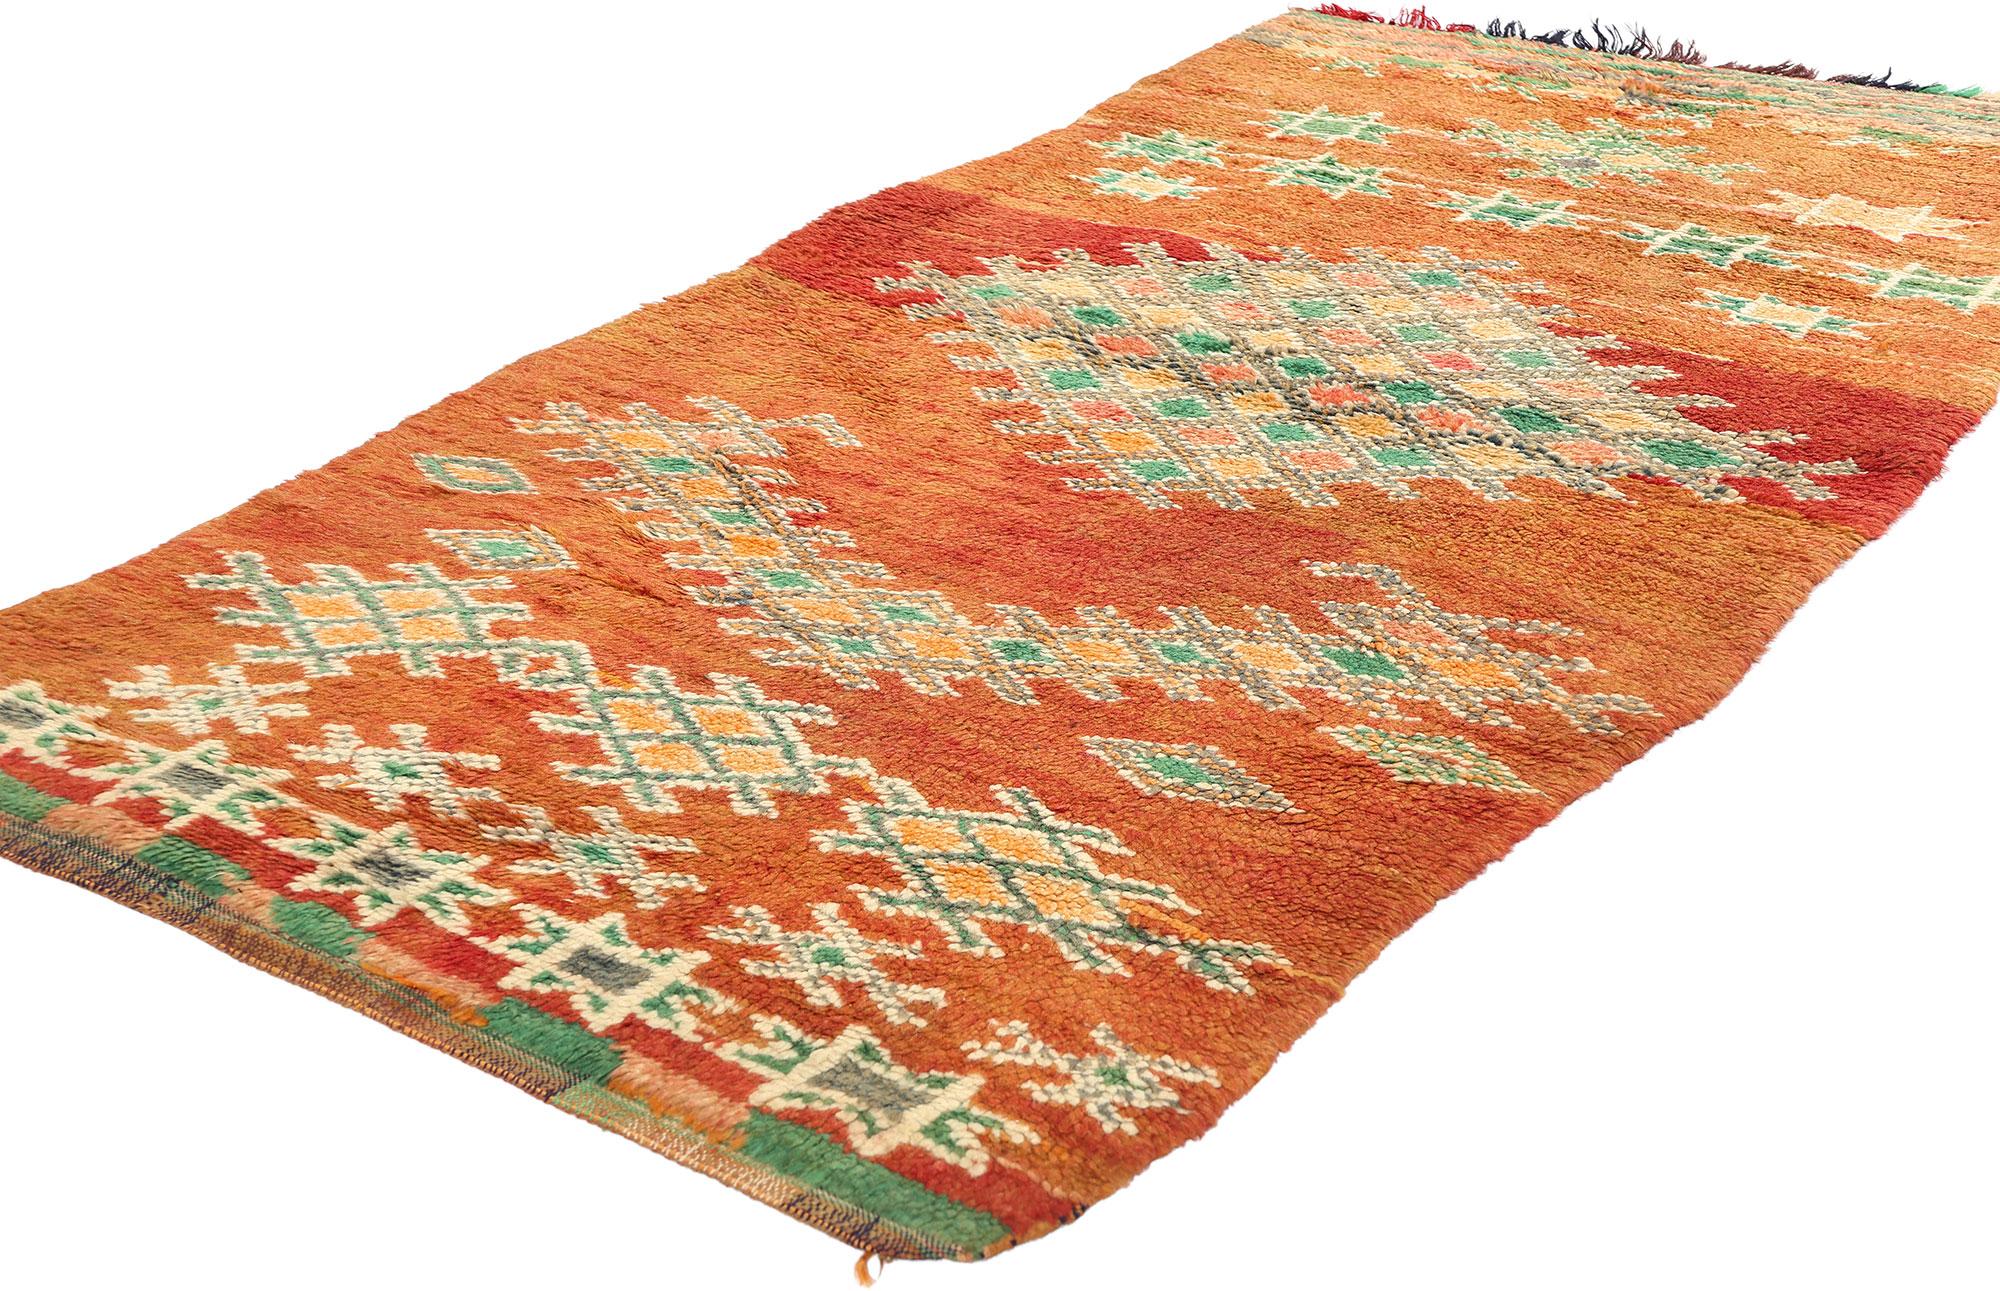 21839 Vintage Orange Boujad Marokkanischer Teppich, 03'02 x 06'11. Die aus der marokkanischen Region Boujad stammenden Boujad-Teppiche sind exquisite handgewebte Meisterwerke, die das lebendige künstlerische Erbe der Berberstämme, insbesondere der